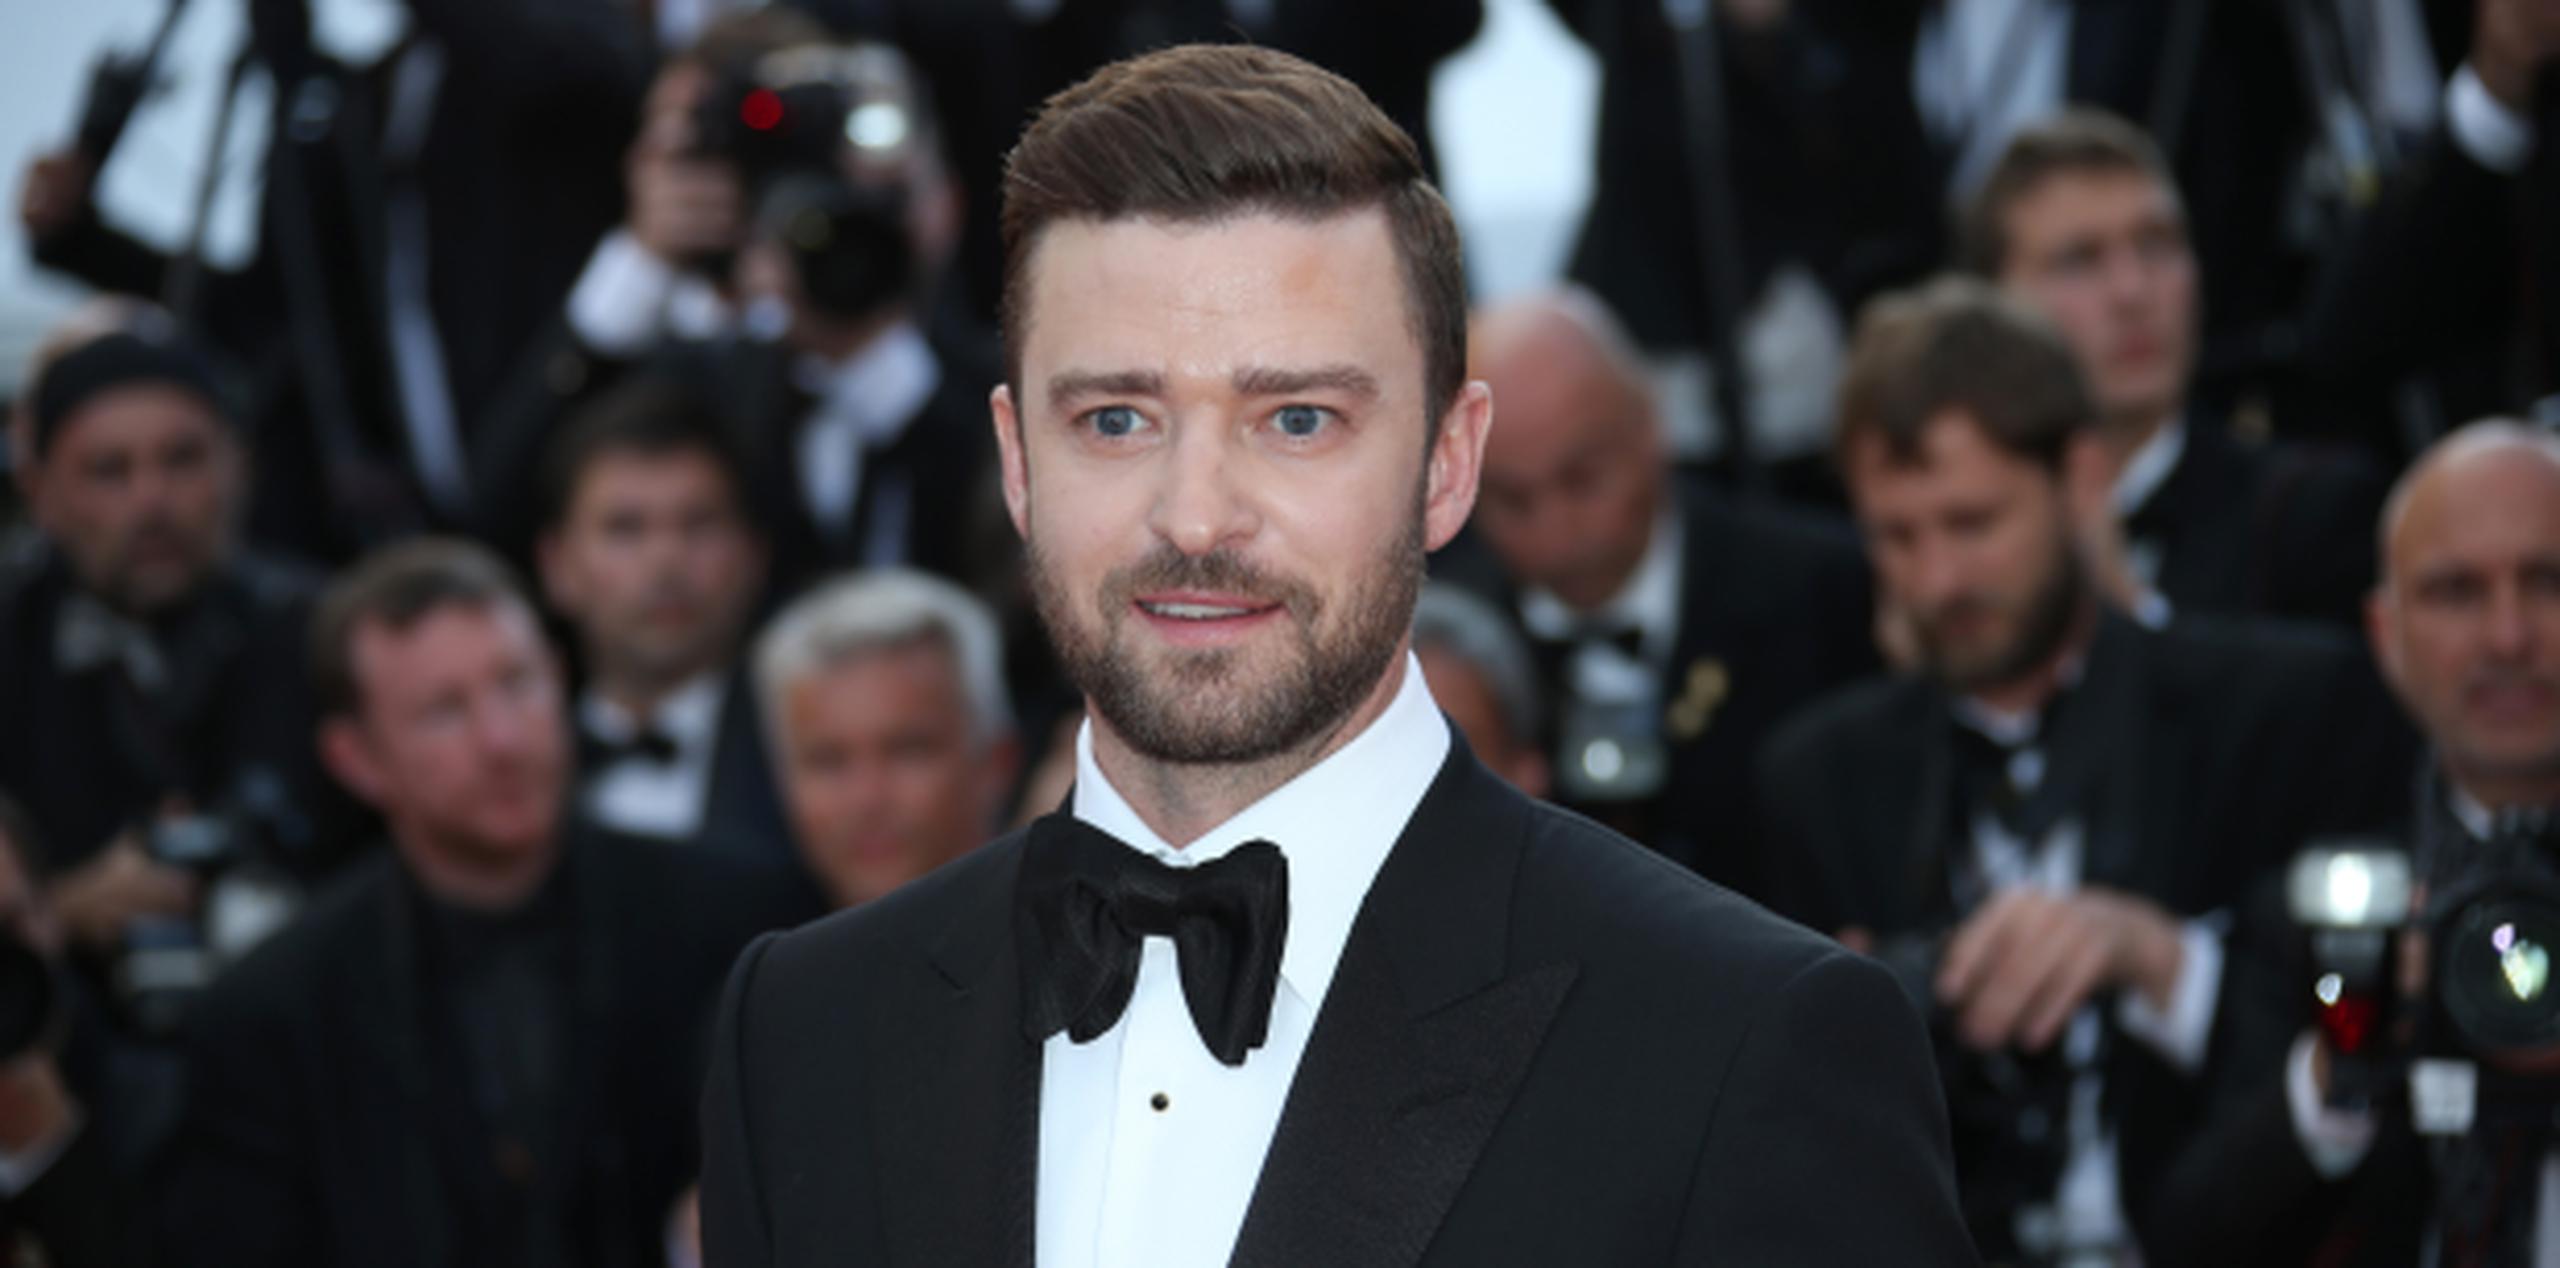 La novia explicó que su padre vio a Timberlake almorzando en el lugar. (Archivo)